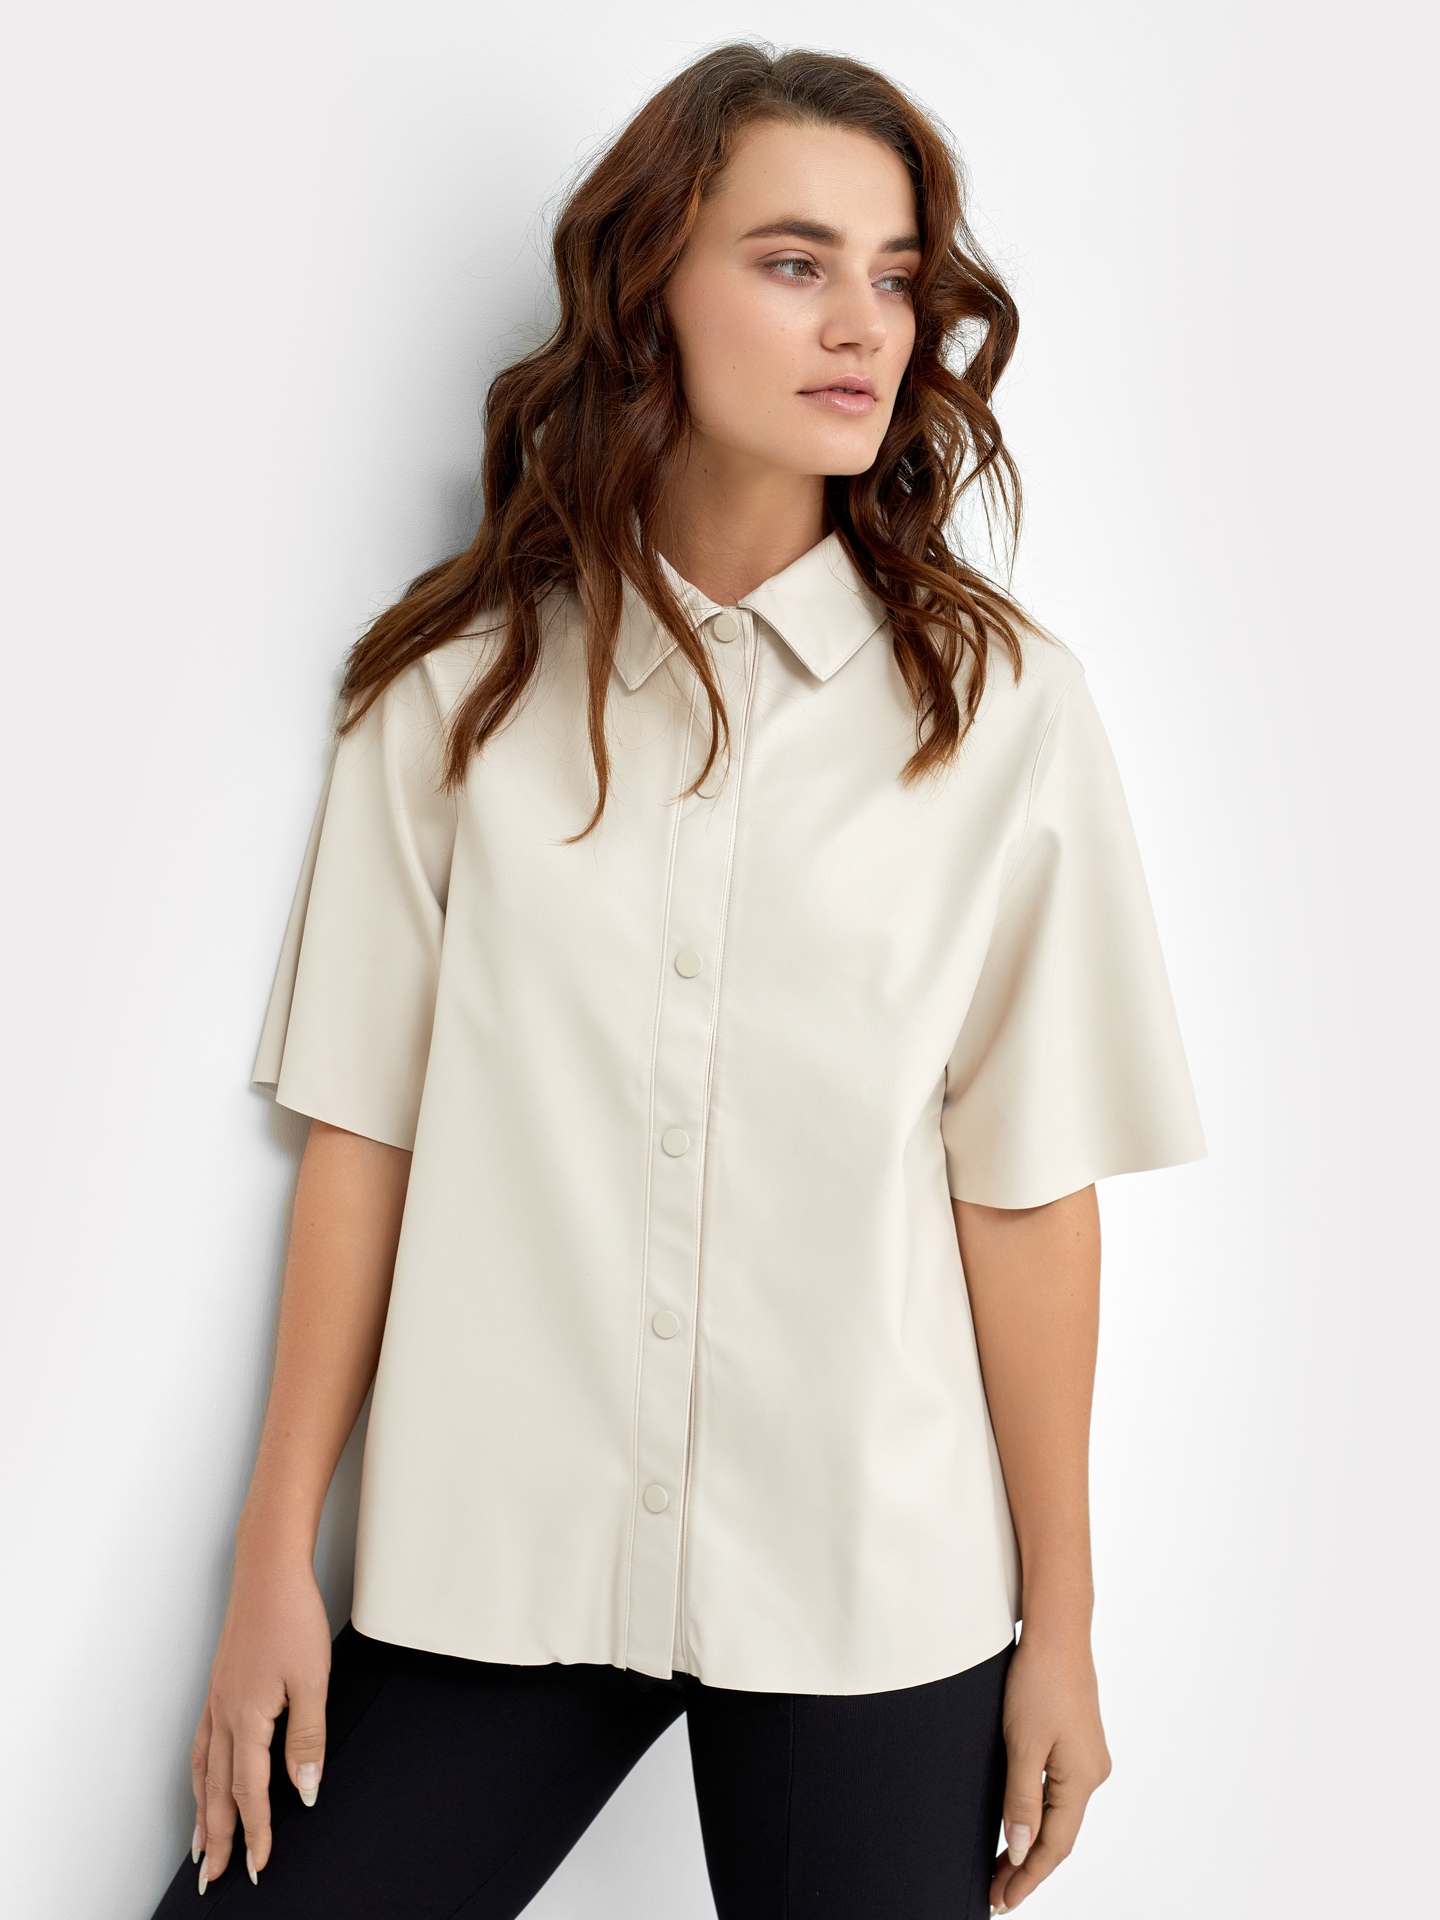 Женская рубашка молочного цвета на кнопках из экокожи